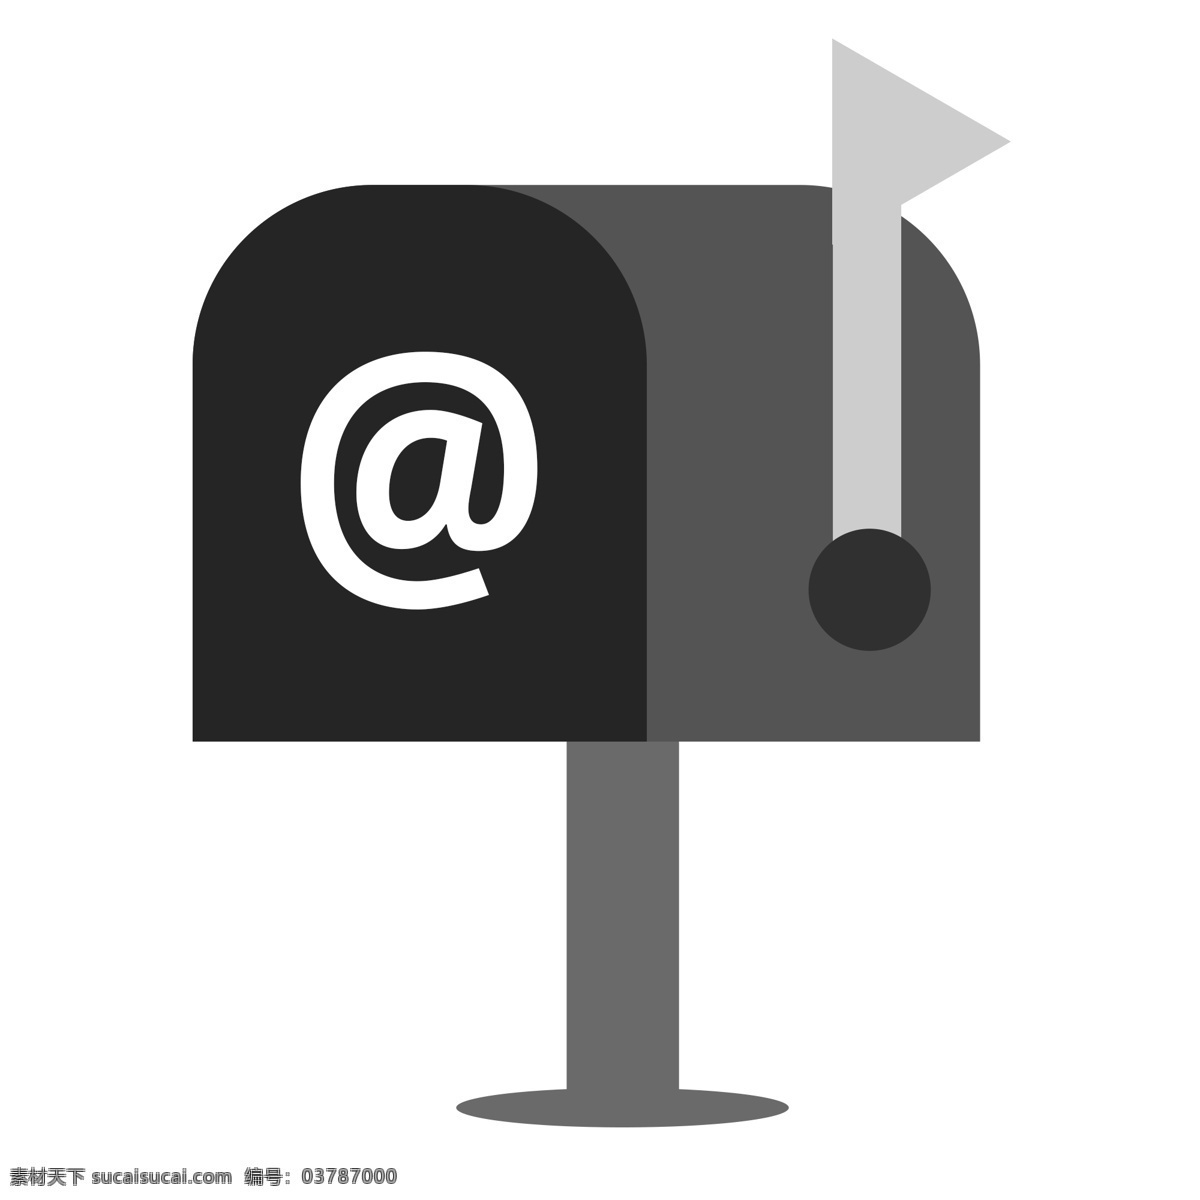 灰色 复古 剪影 邮箱 小 图标 名片 联系方式 发送重要文件 通知 地址 邮寄 收件箱